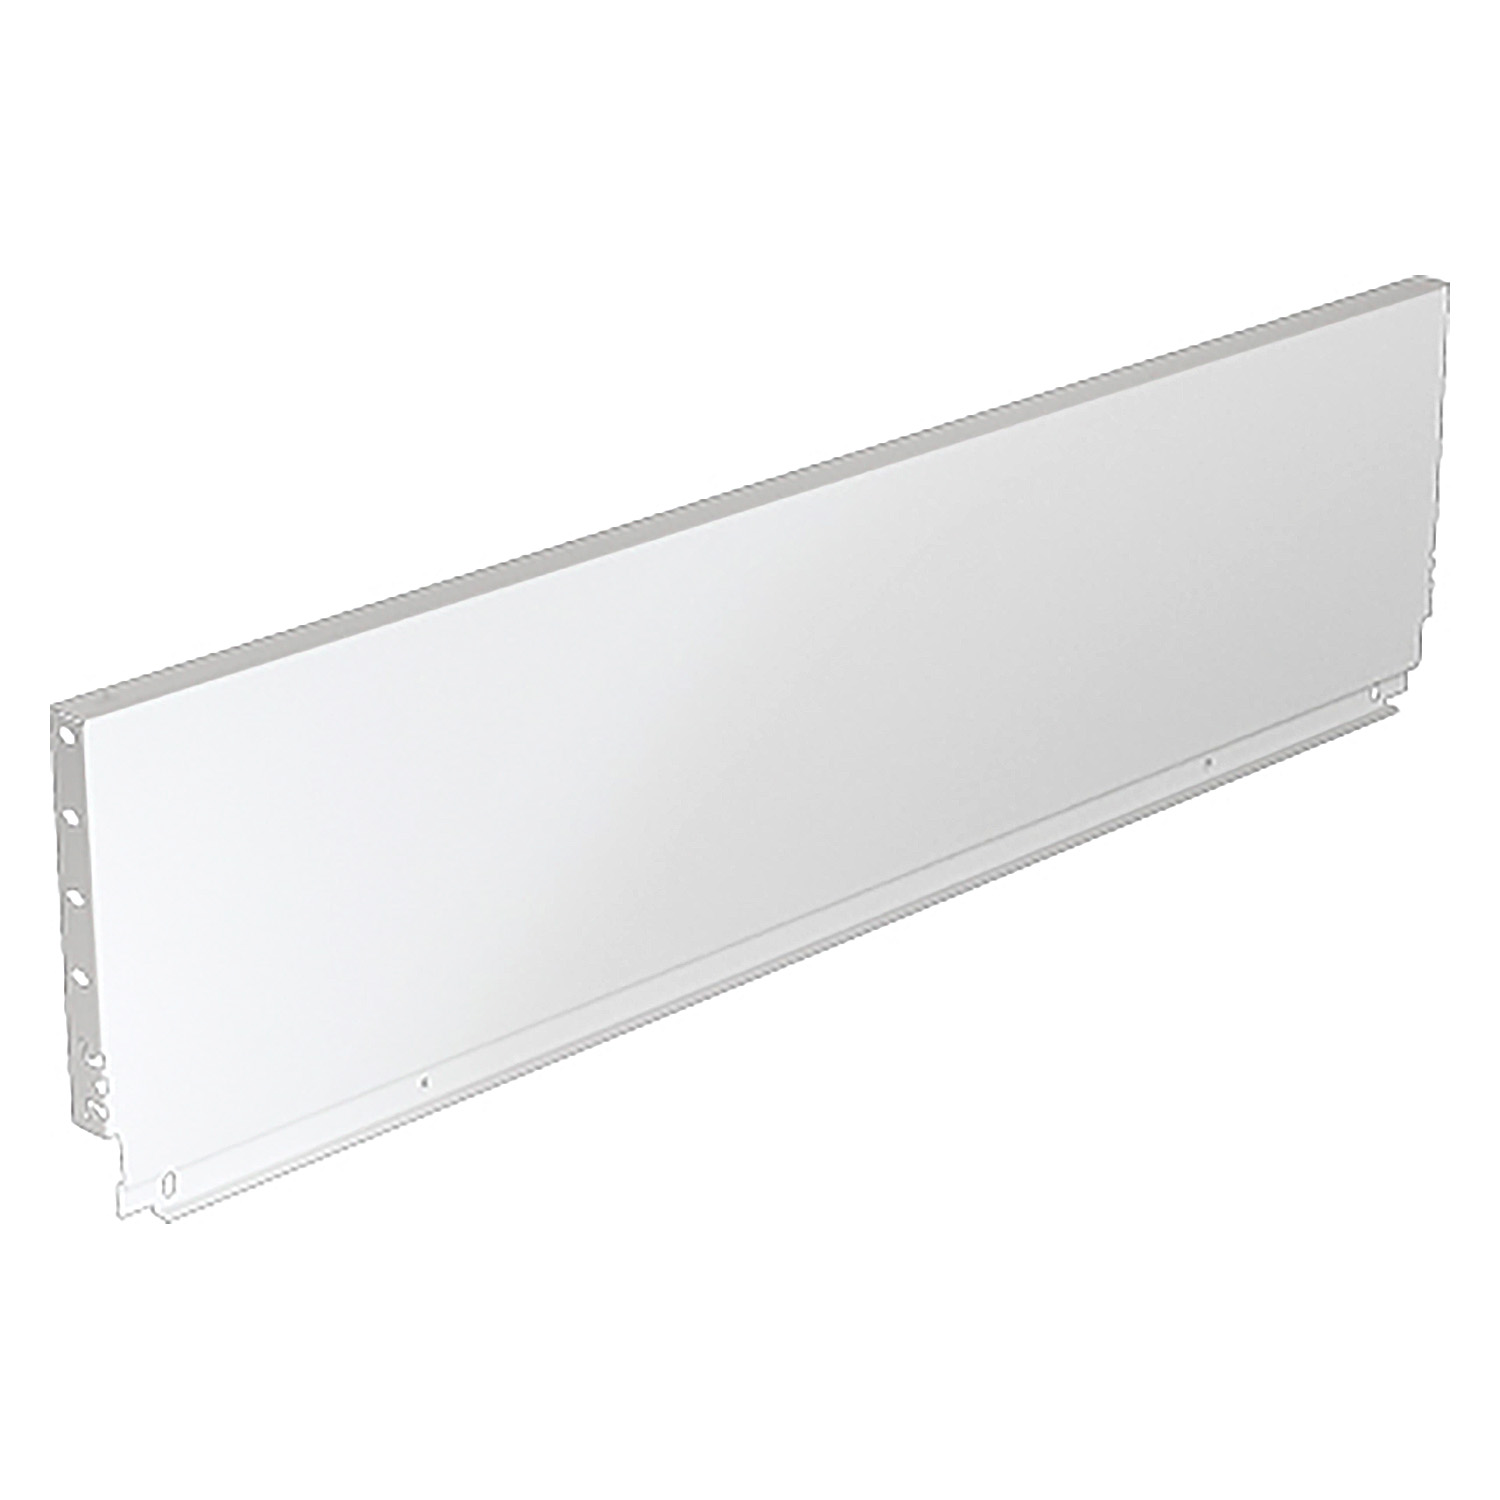 HETTICH Stahlrückwand ArciTech, 218 x 700 mm, weiß, 9121624